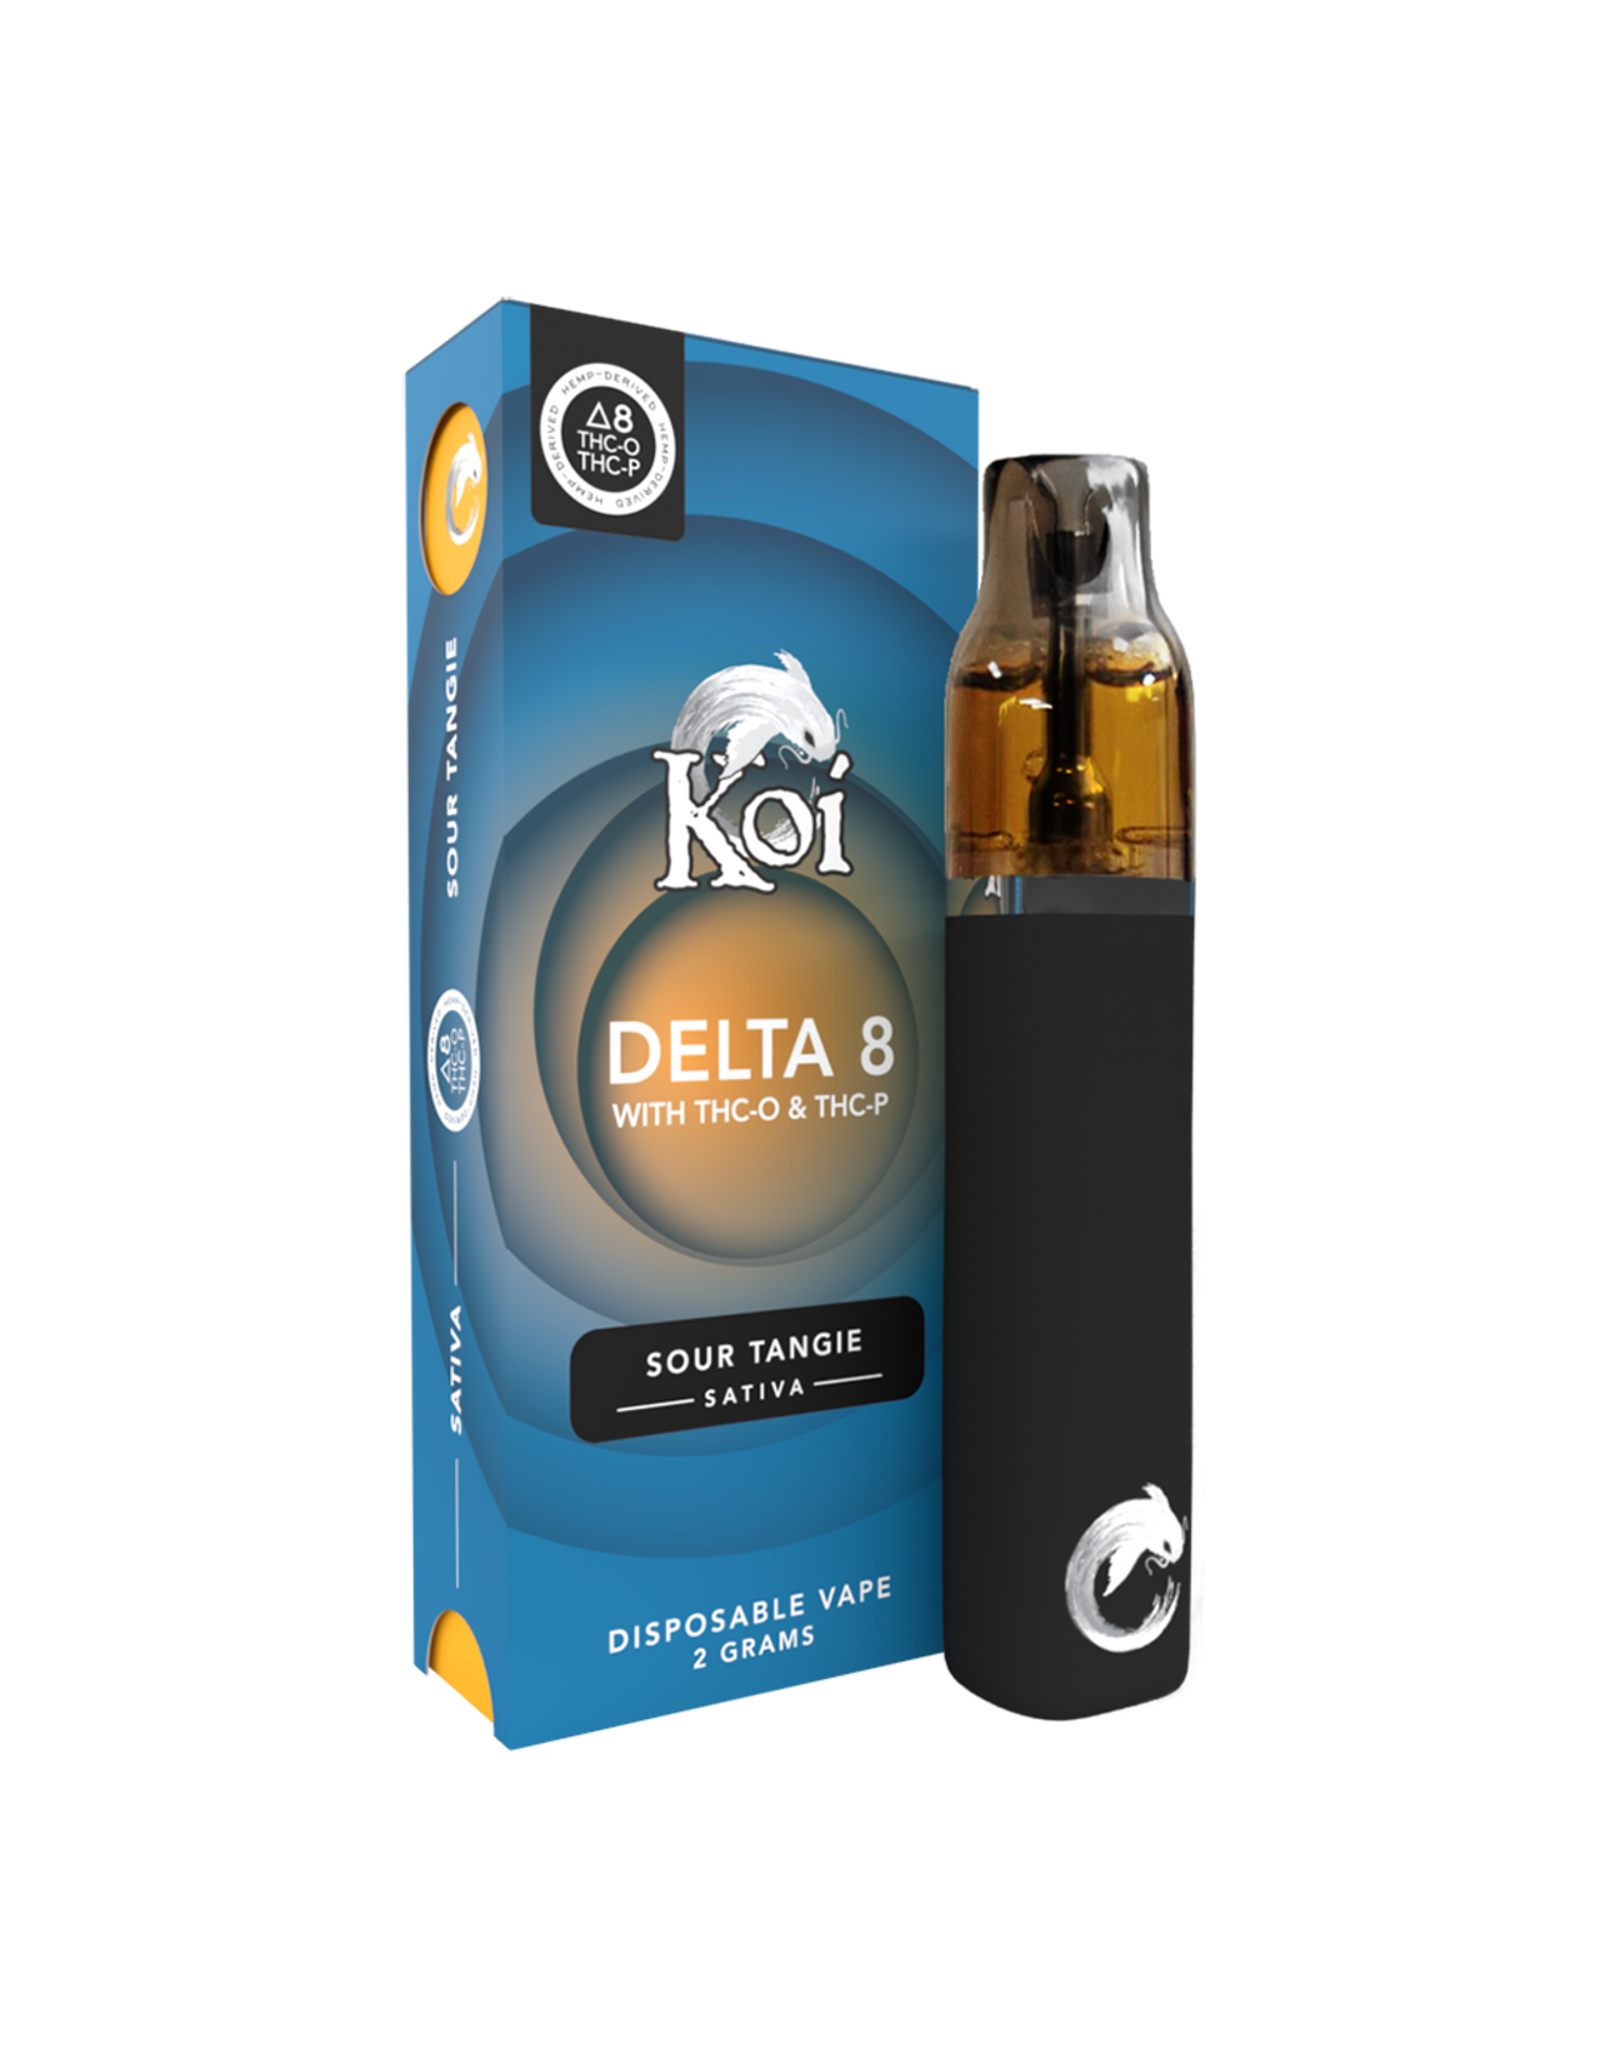 Koi Koi Delta 8 THC-O THC-P Sour Tangie Sativa  Disposable 2gr